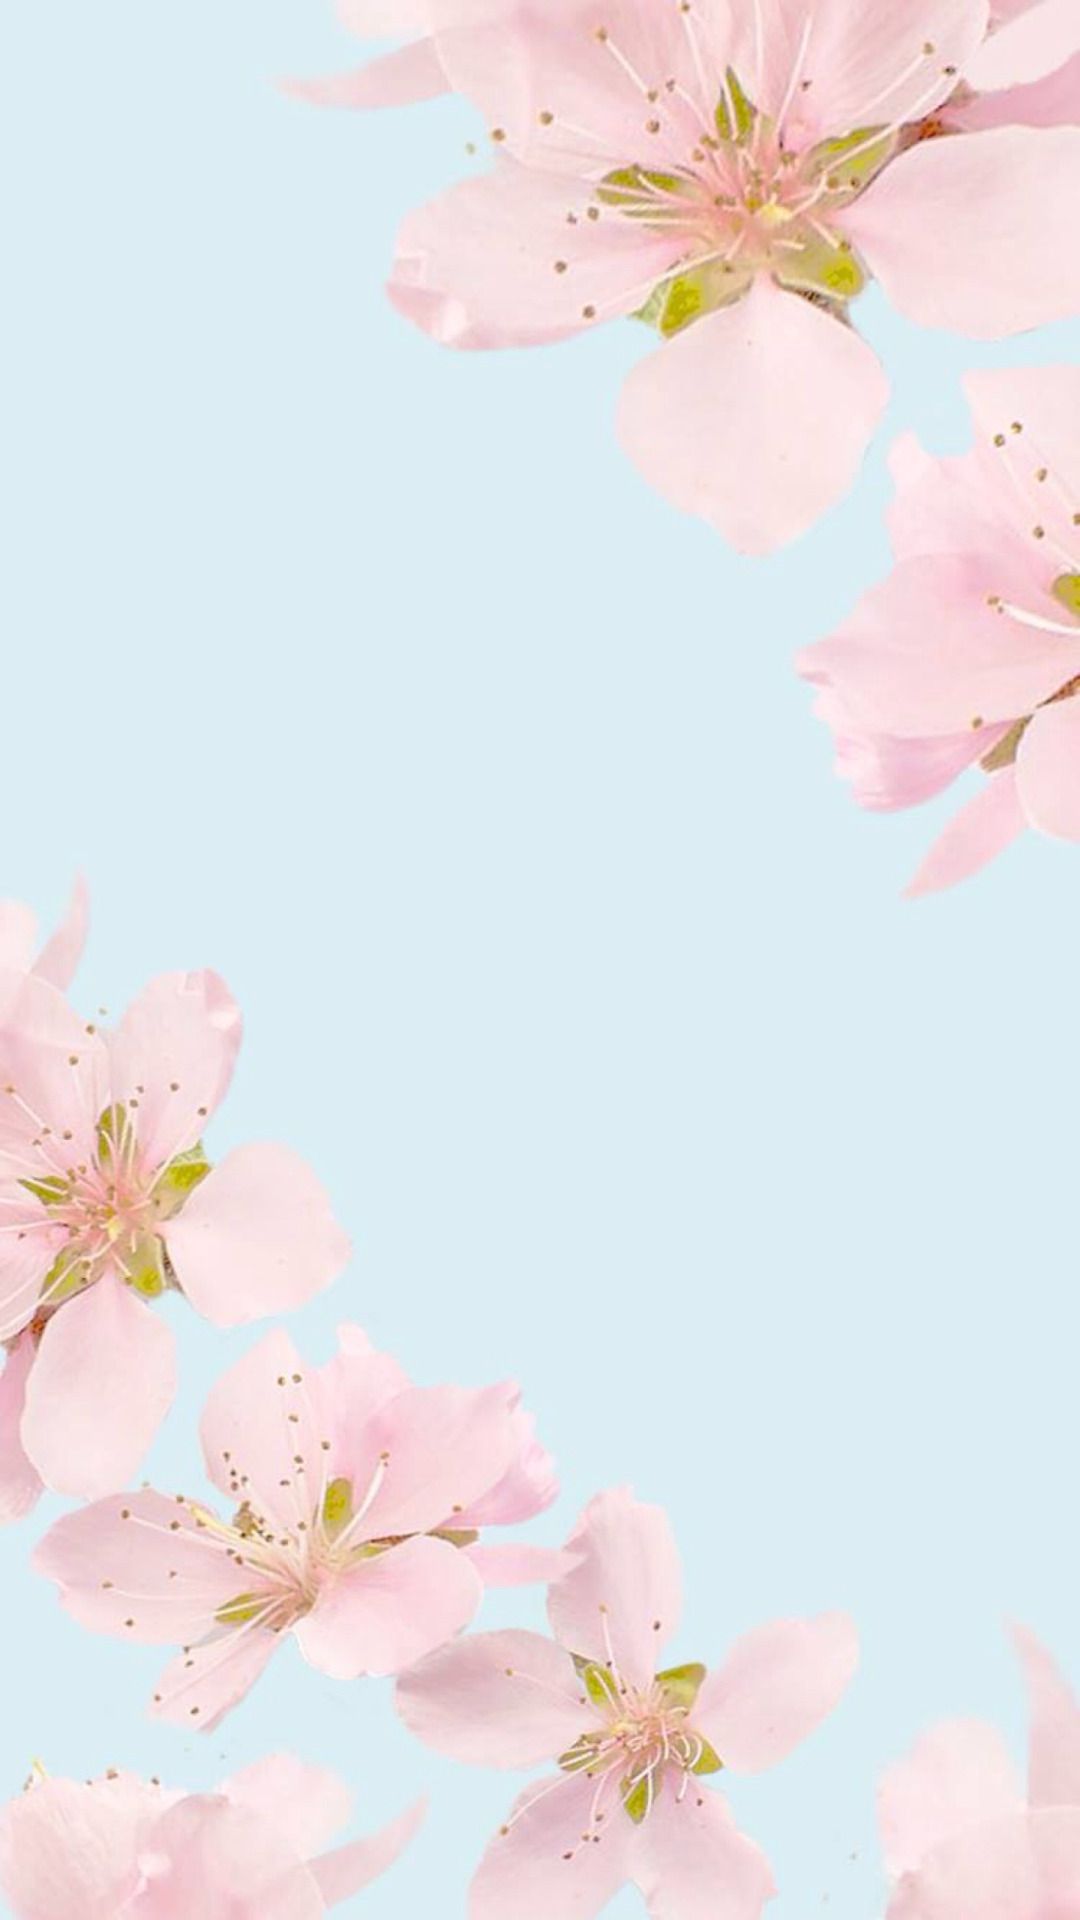 graziosi sfondi tumblr,rosa,fiorire,fiore,fiore di ciliegio,petalo